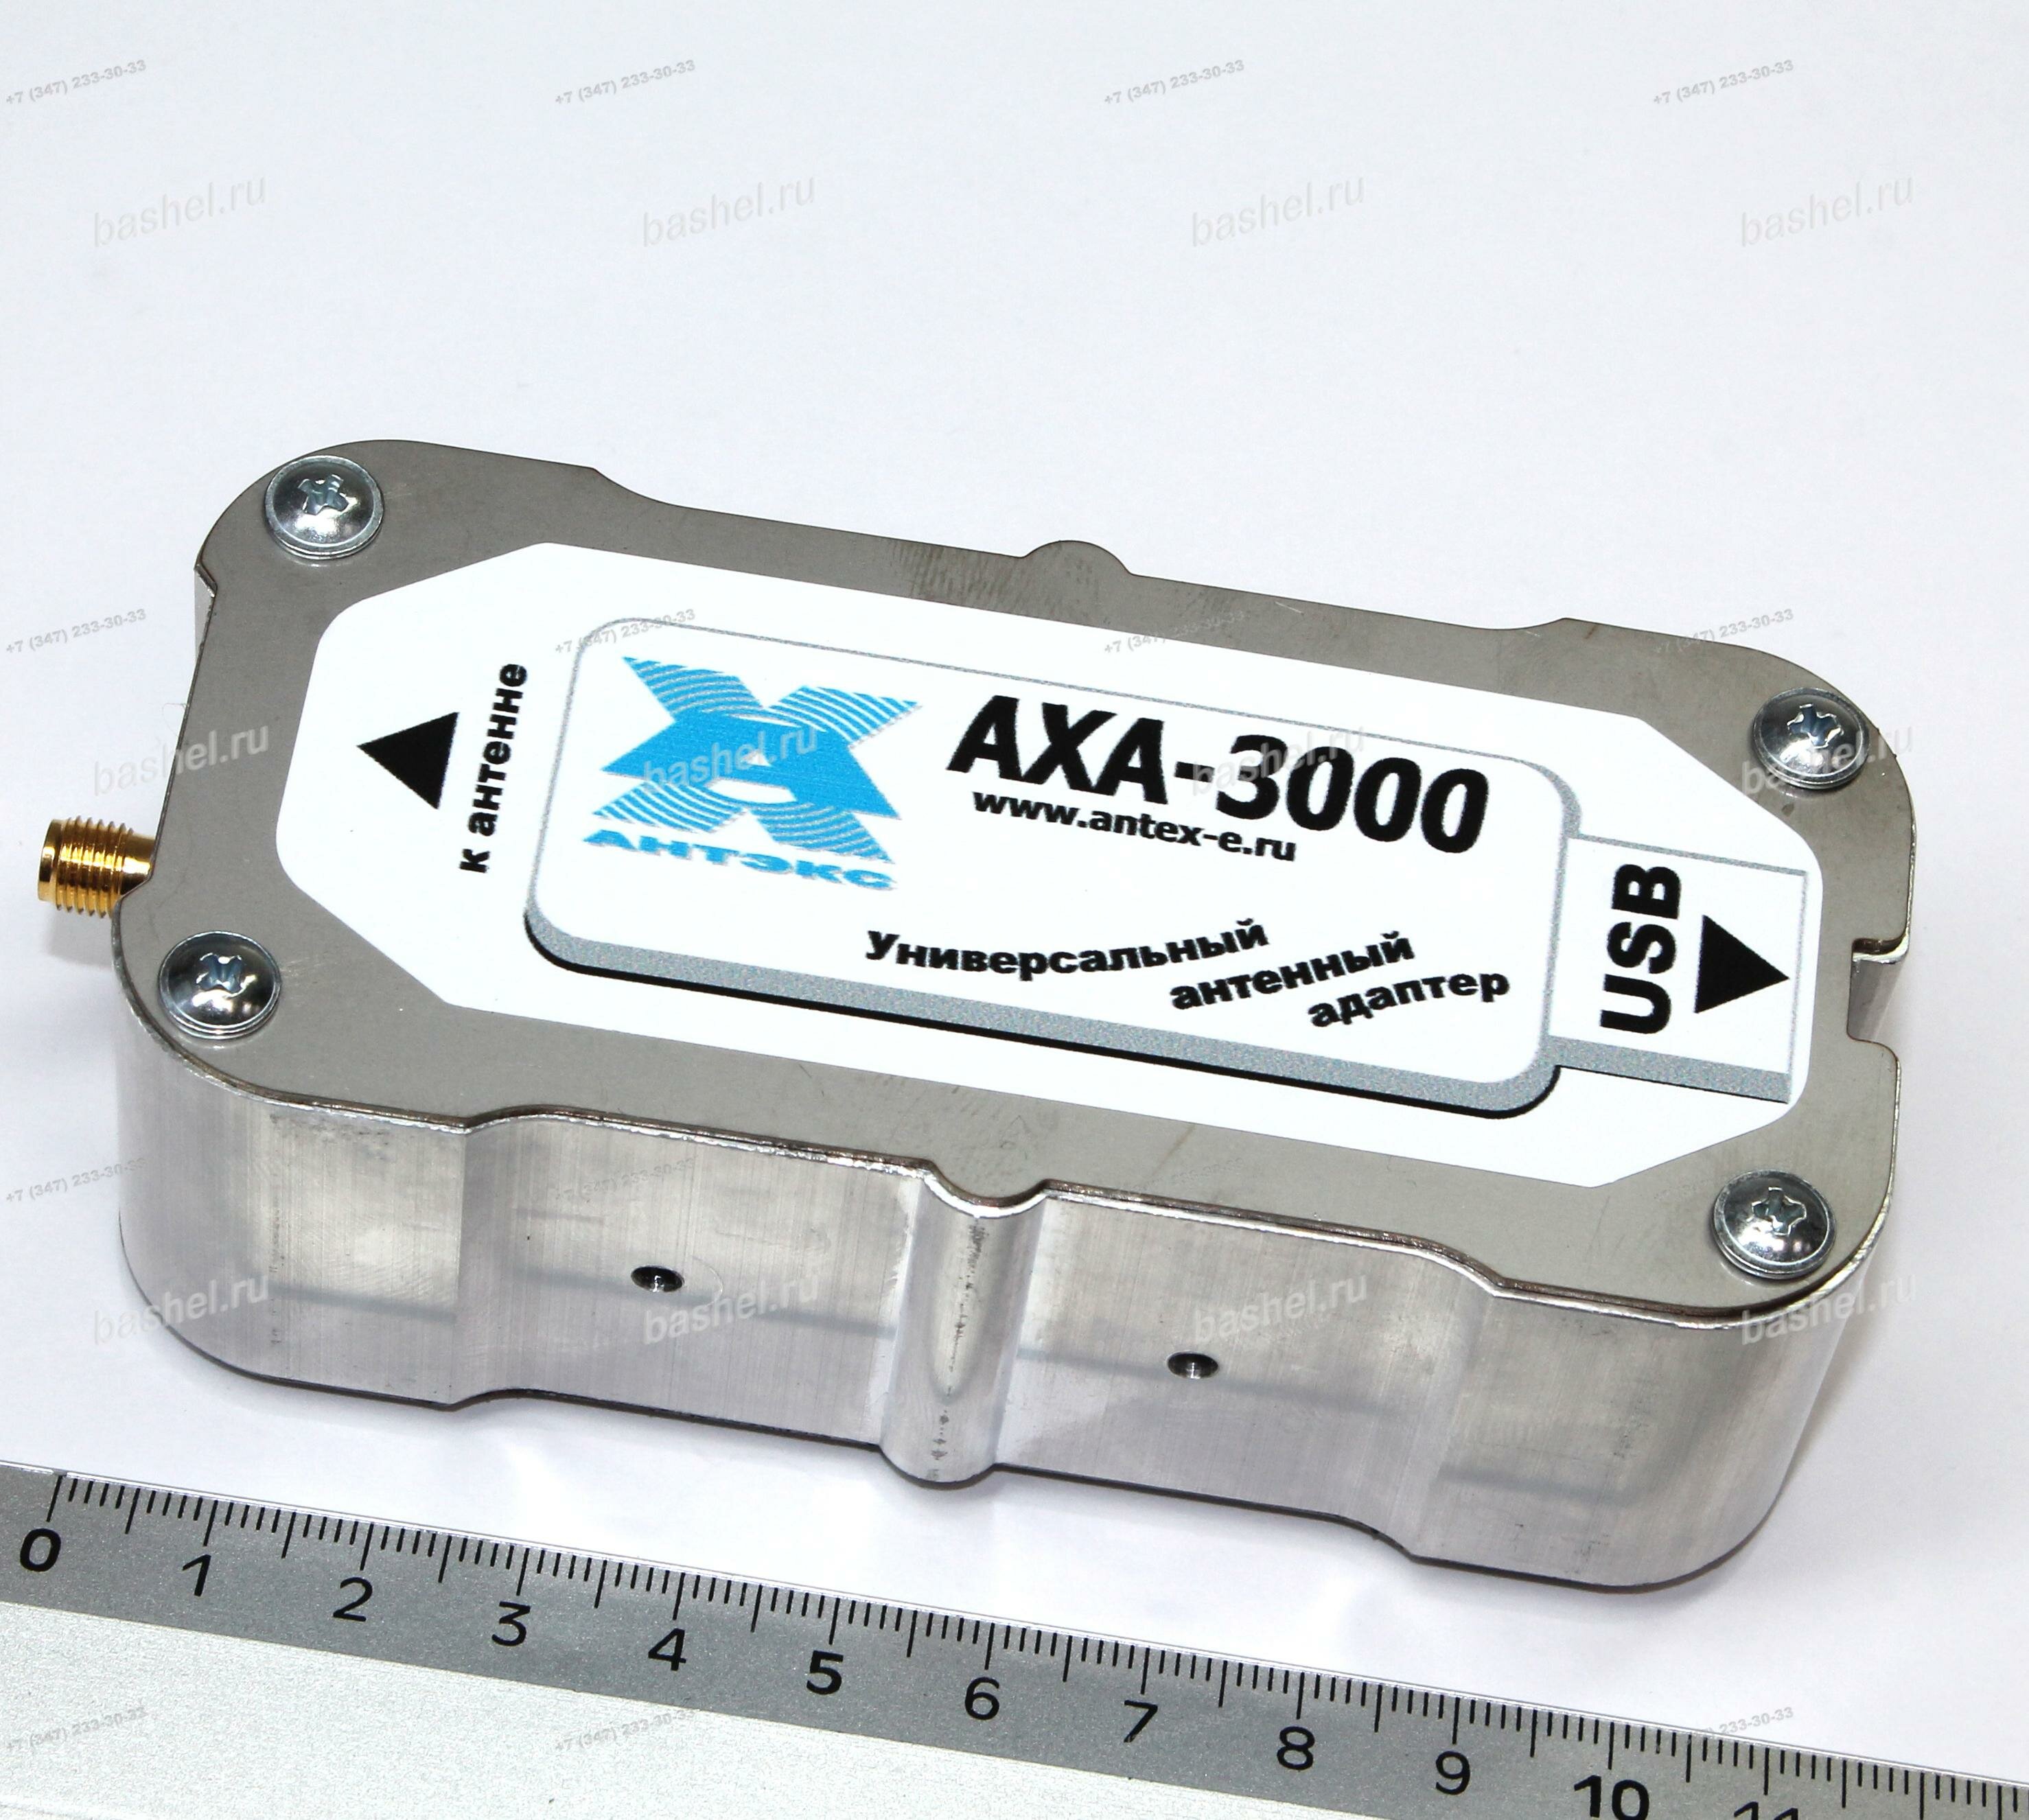 Переходник антенный универсальный (адаптер) AXA-3000 для 3G 4G модемов Antex электротовар